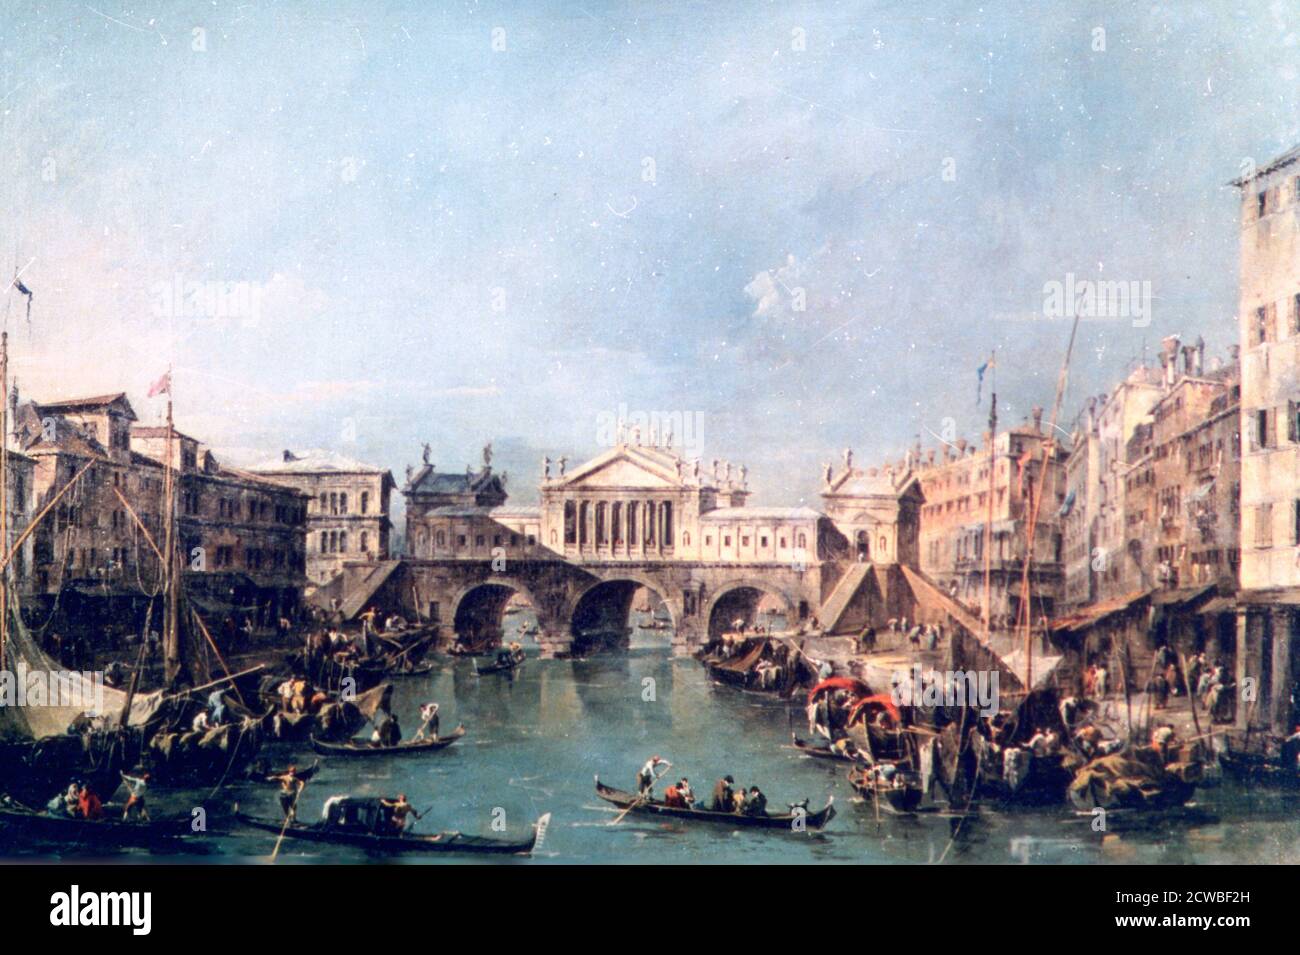 Venice', c1775 Artista: Francesco Guardi. Francesco Guardi (1712-1793) fue un pintor italiano, noble y miembro de la Escuela veneciana. Foto de stock